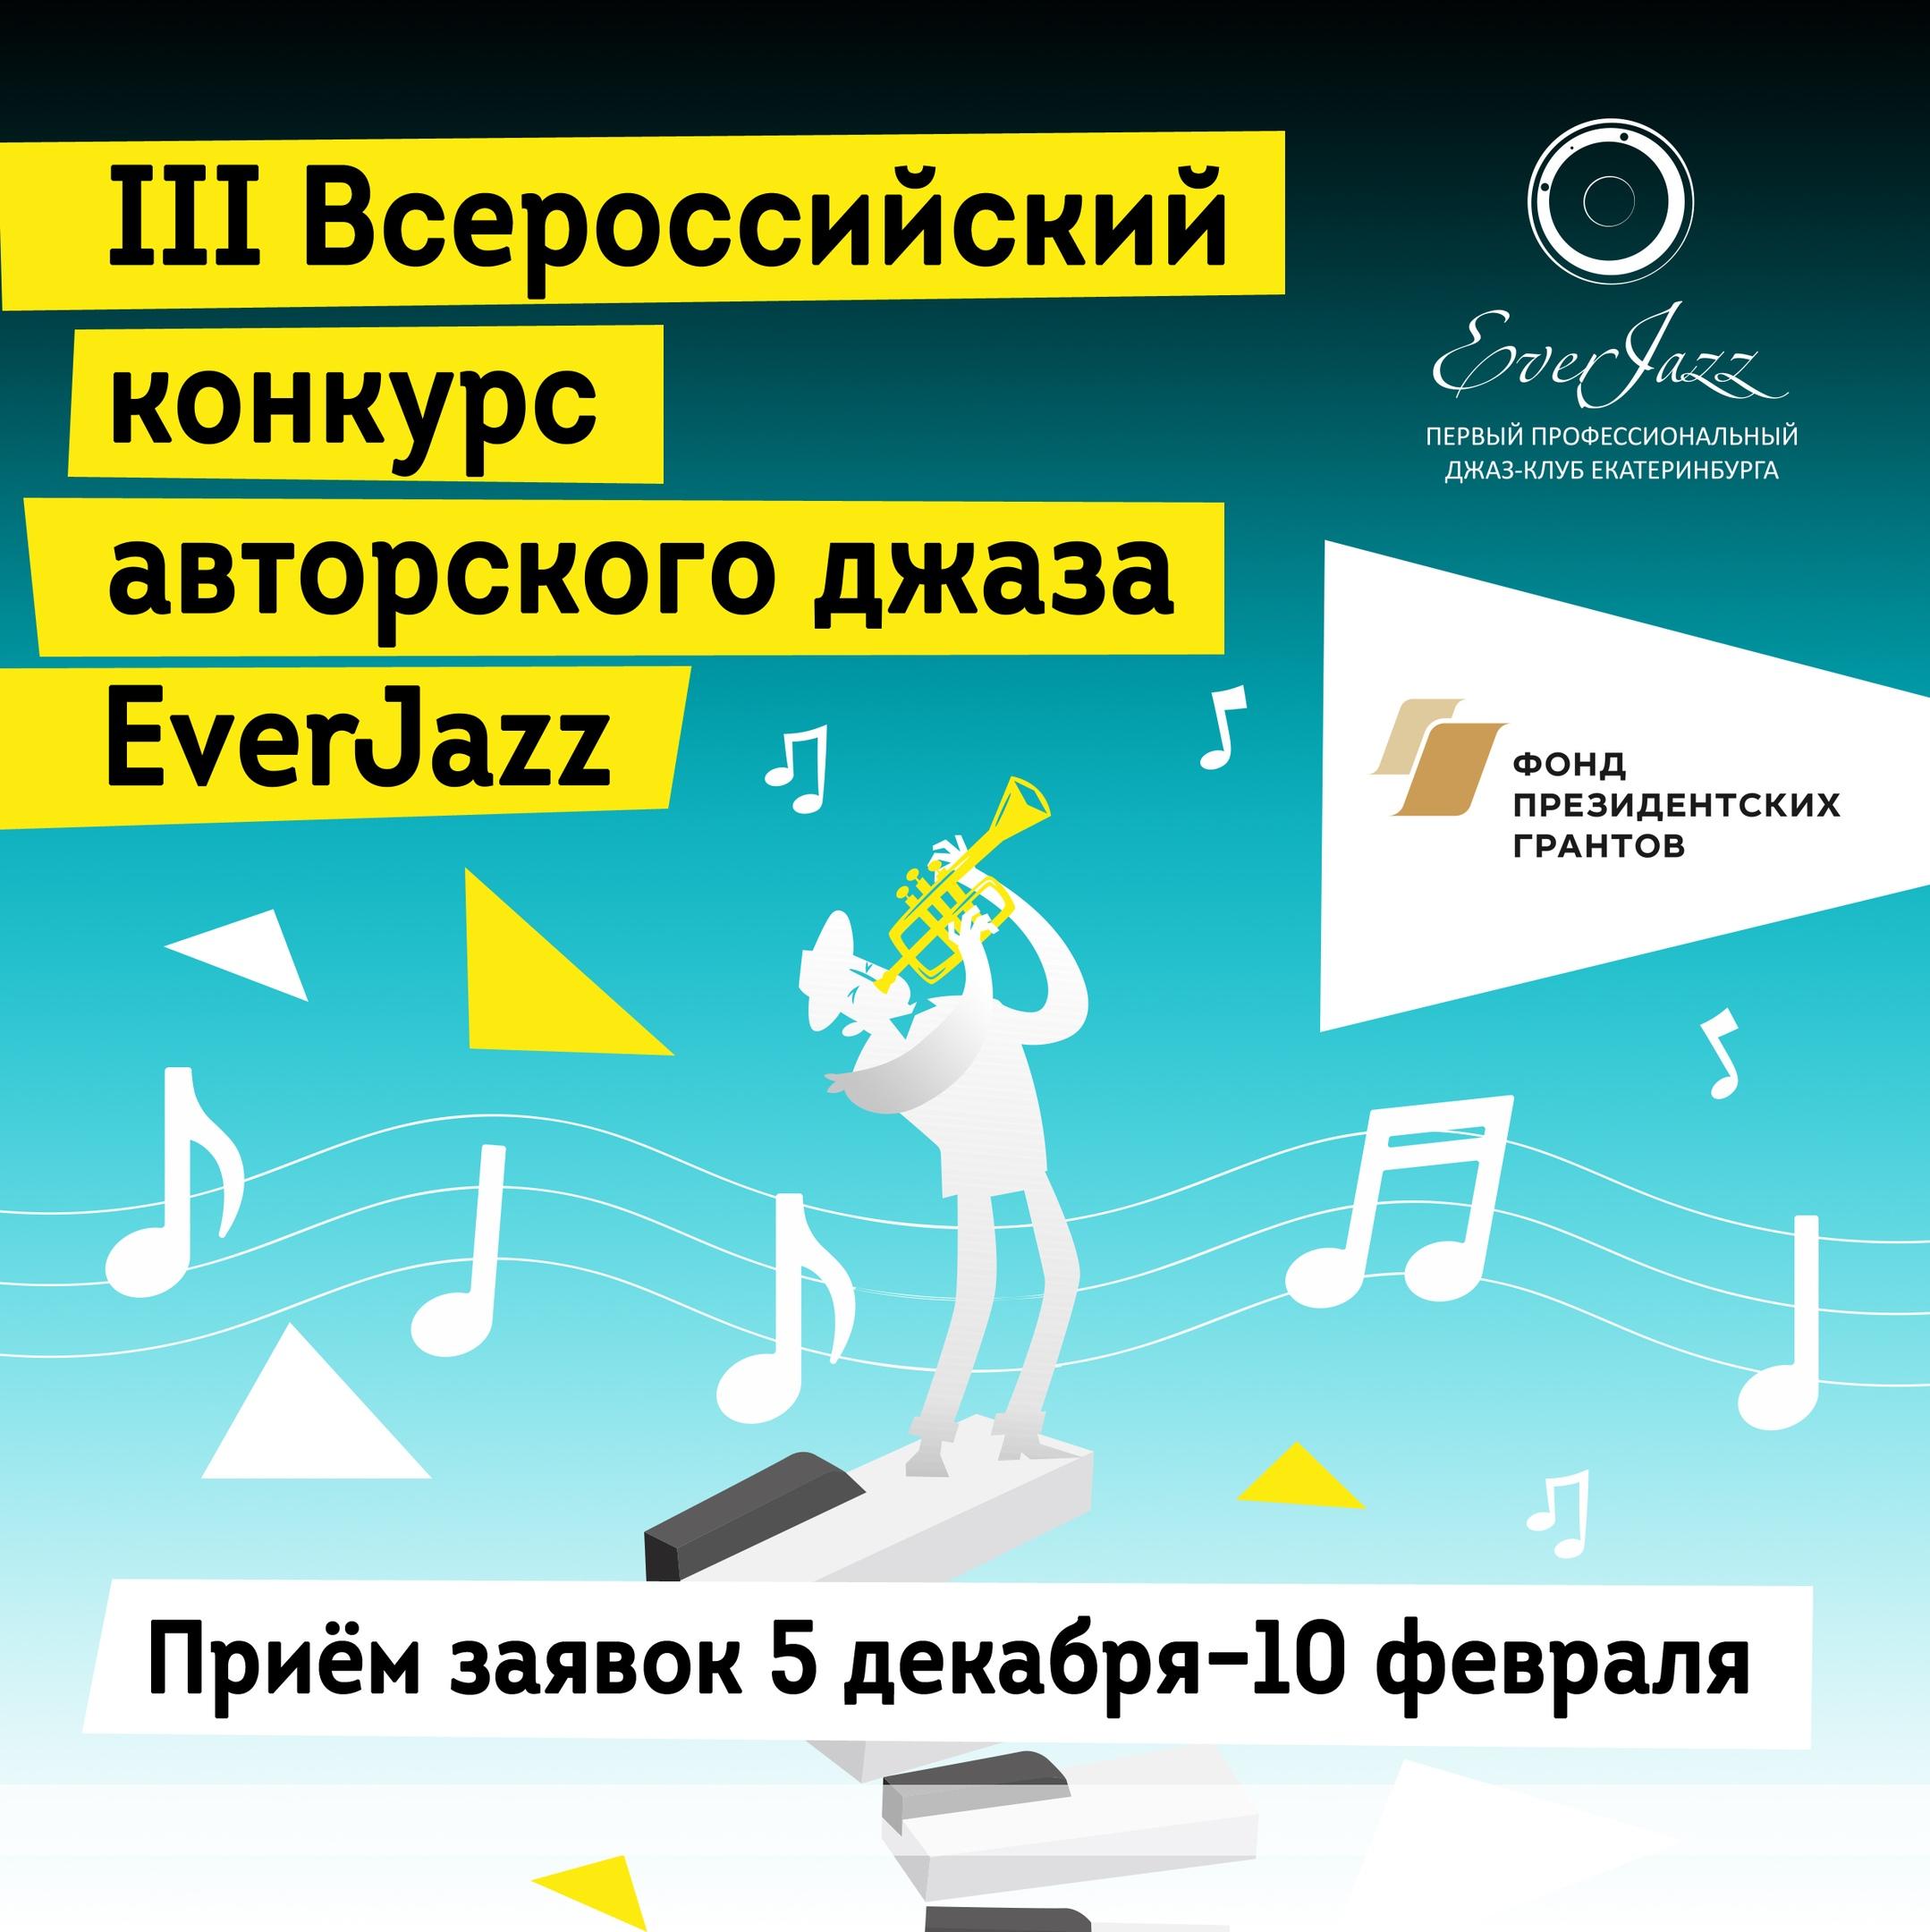 Финал III Всероссийского конкурса авторского джаза EverJazz 